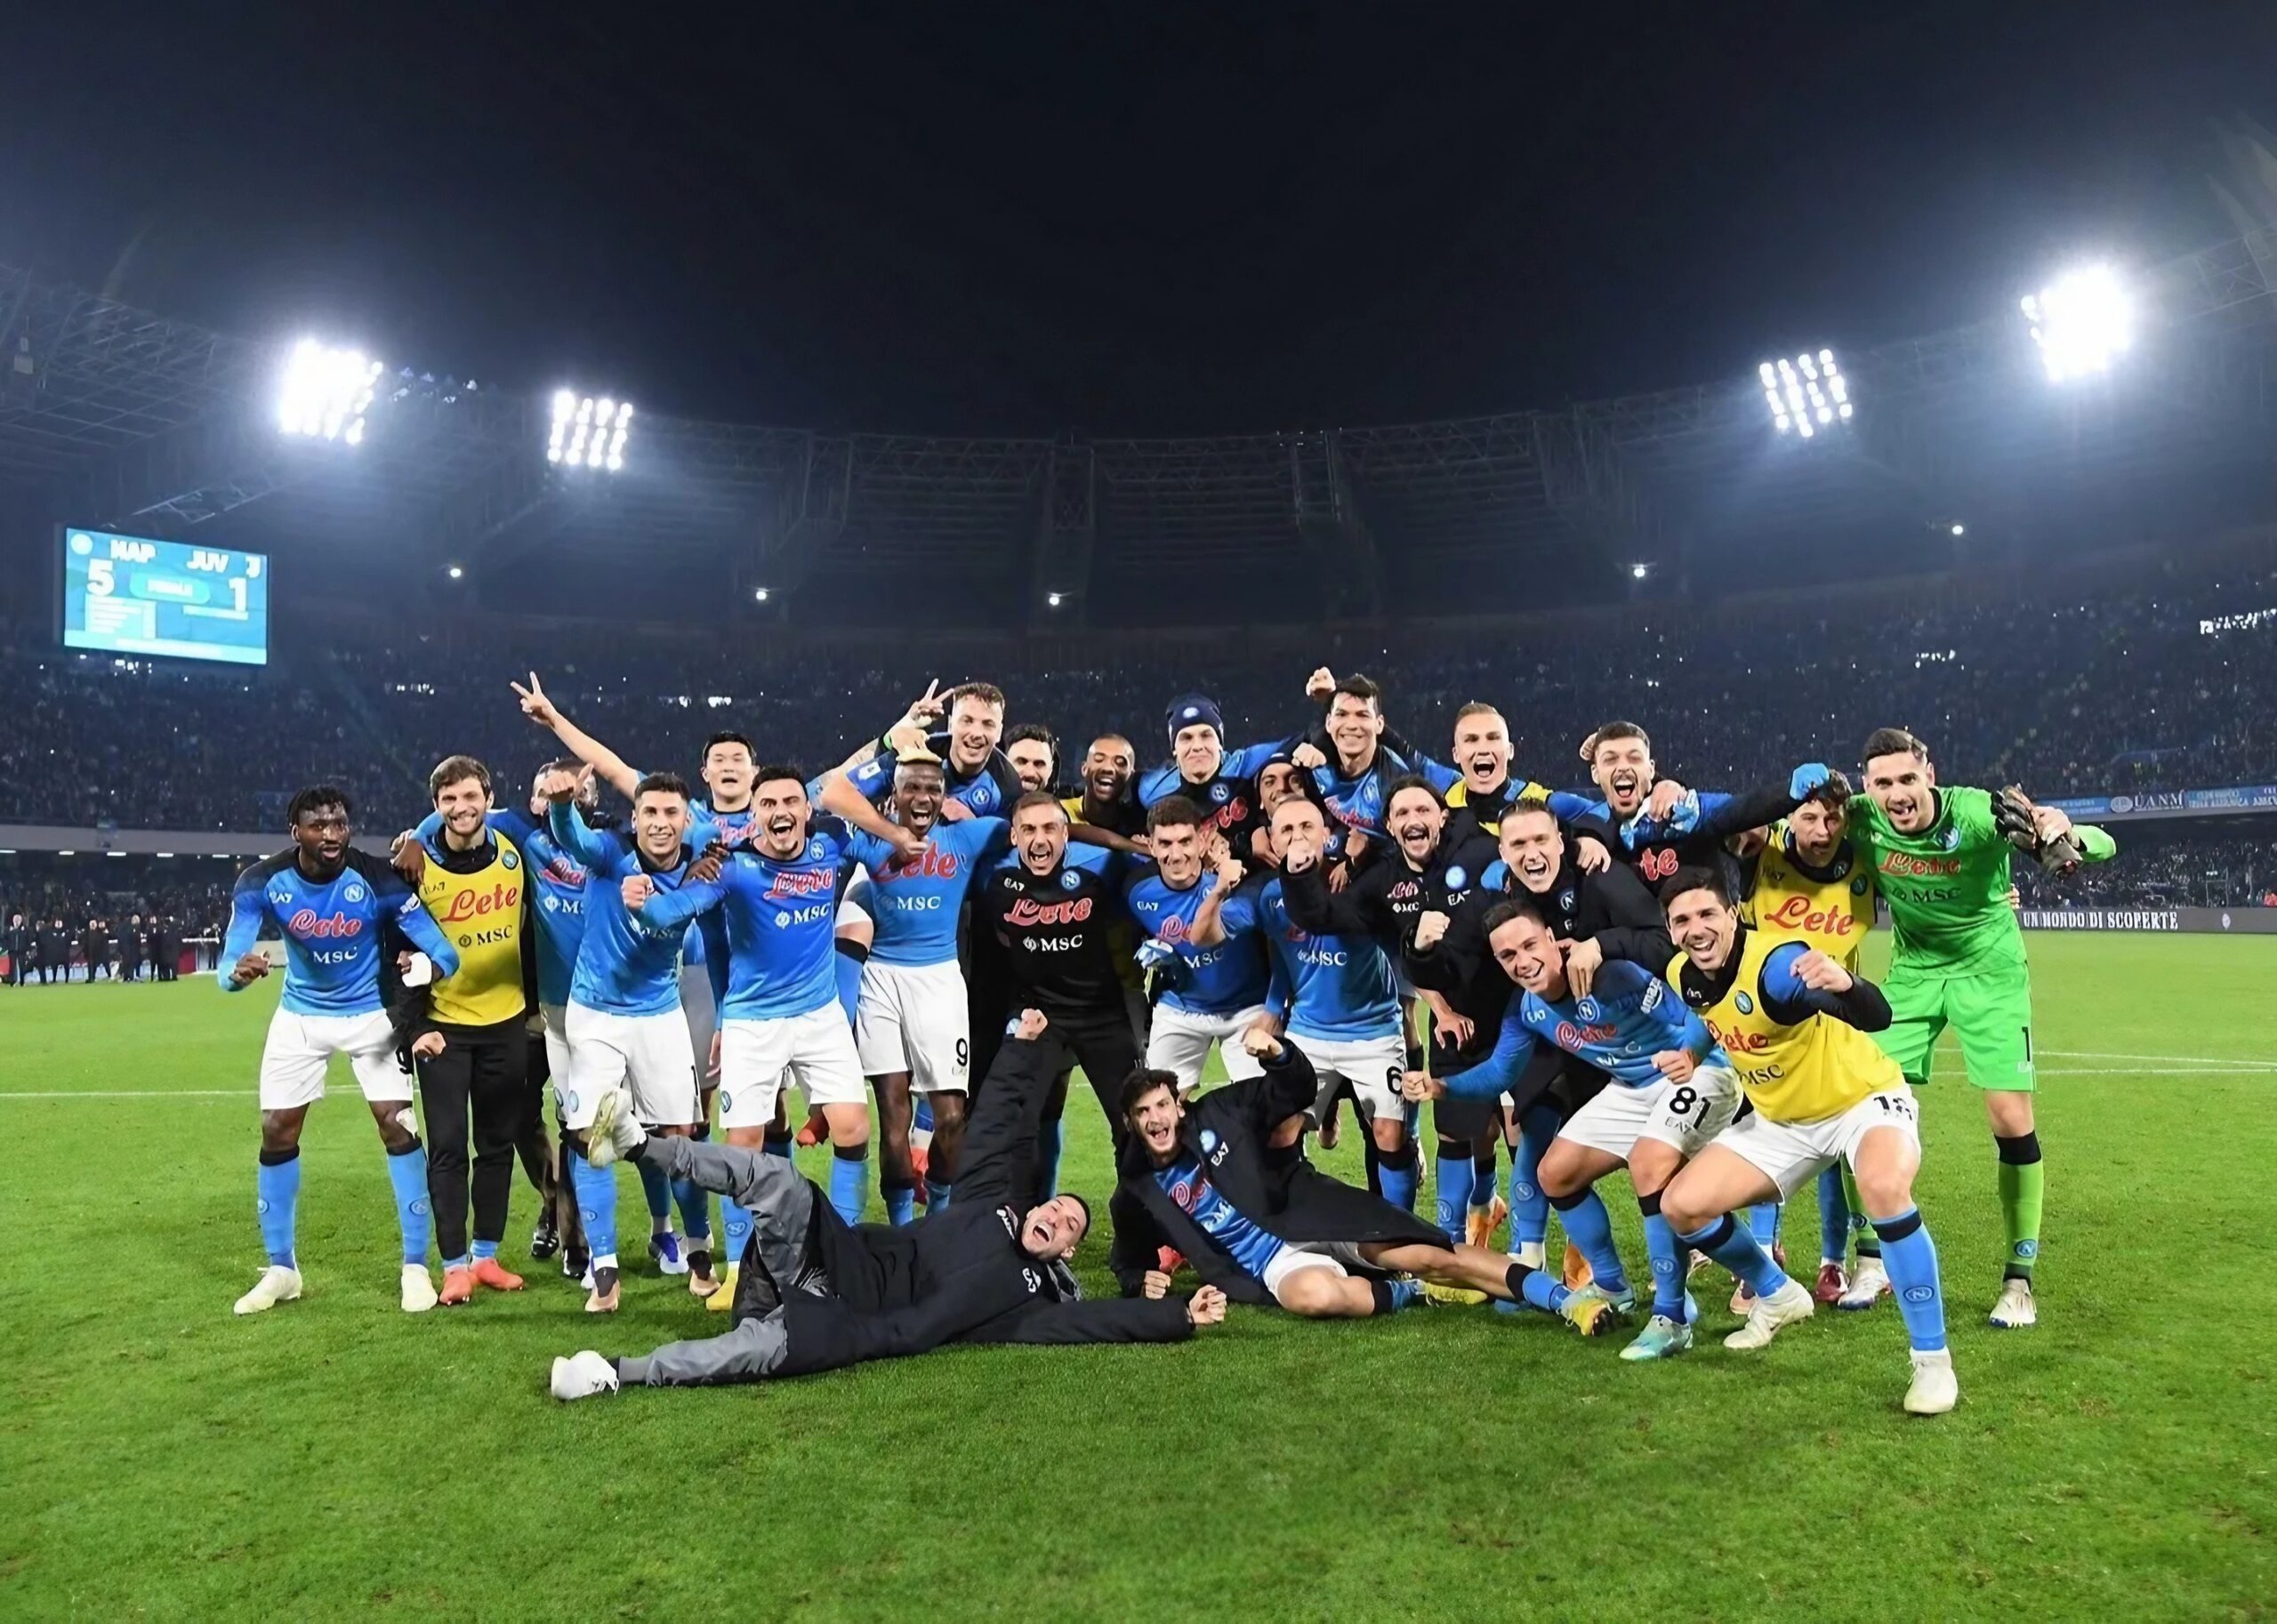 Calciatori SSC Napoli festeggiano dopo la vittoria contro la Juventus